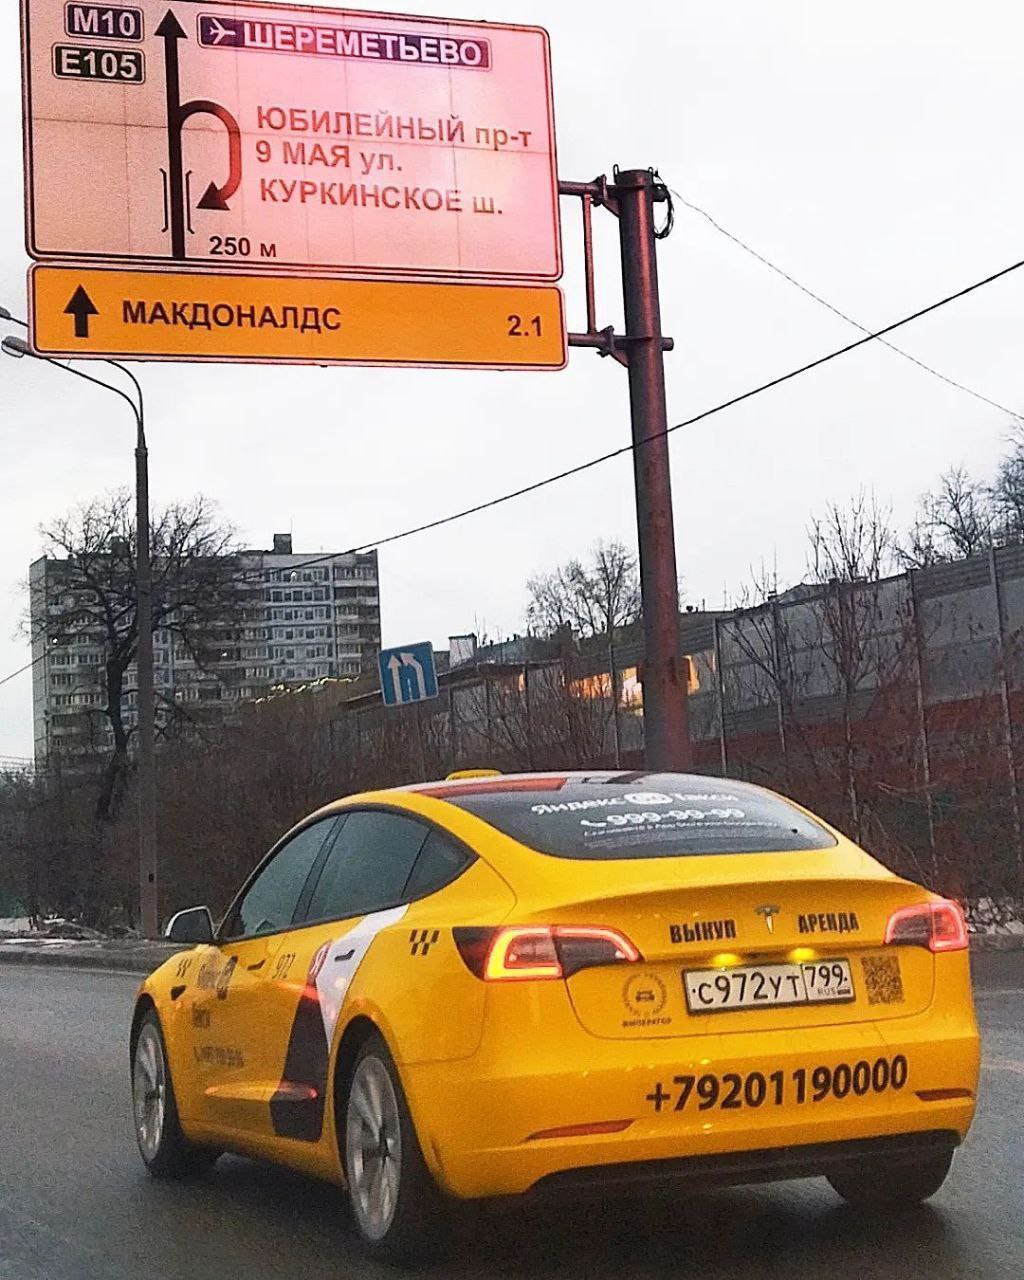 Бесплатное такси для ветеранов Подмосковья